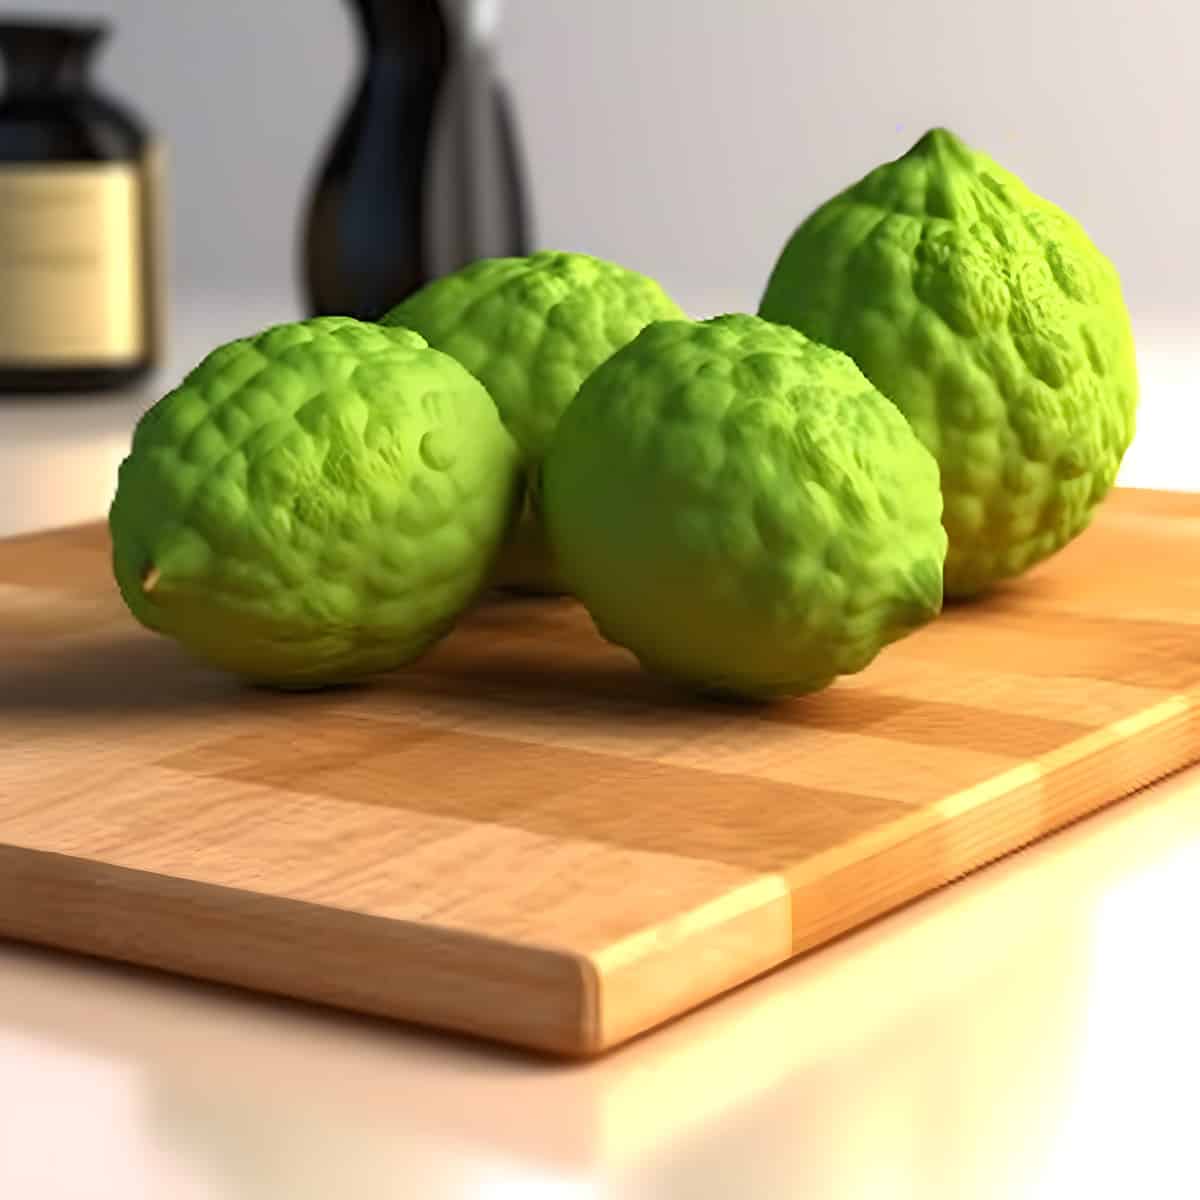 Kaffir Lime on a kitchen counter